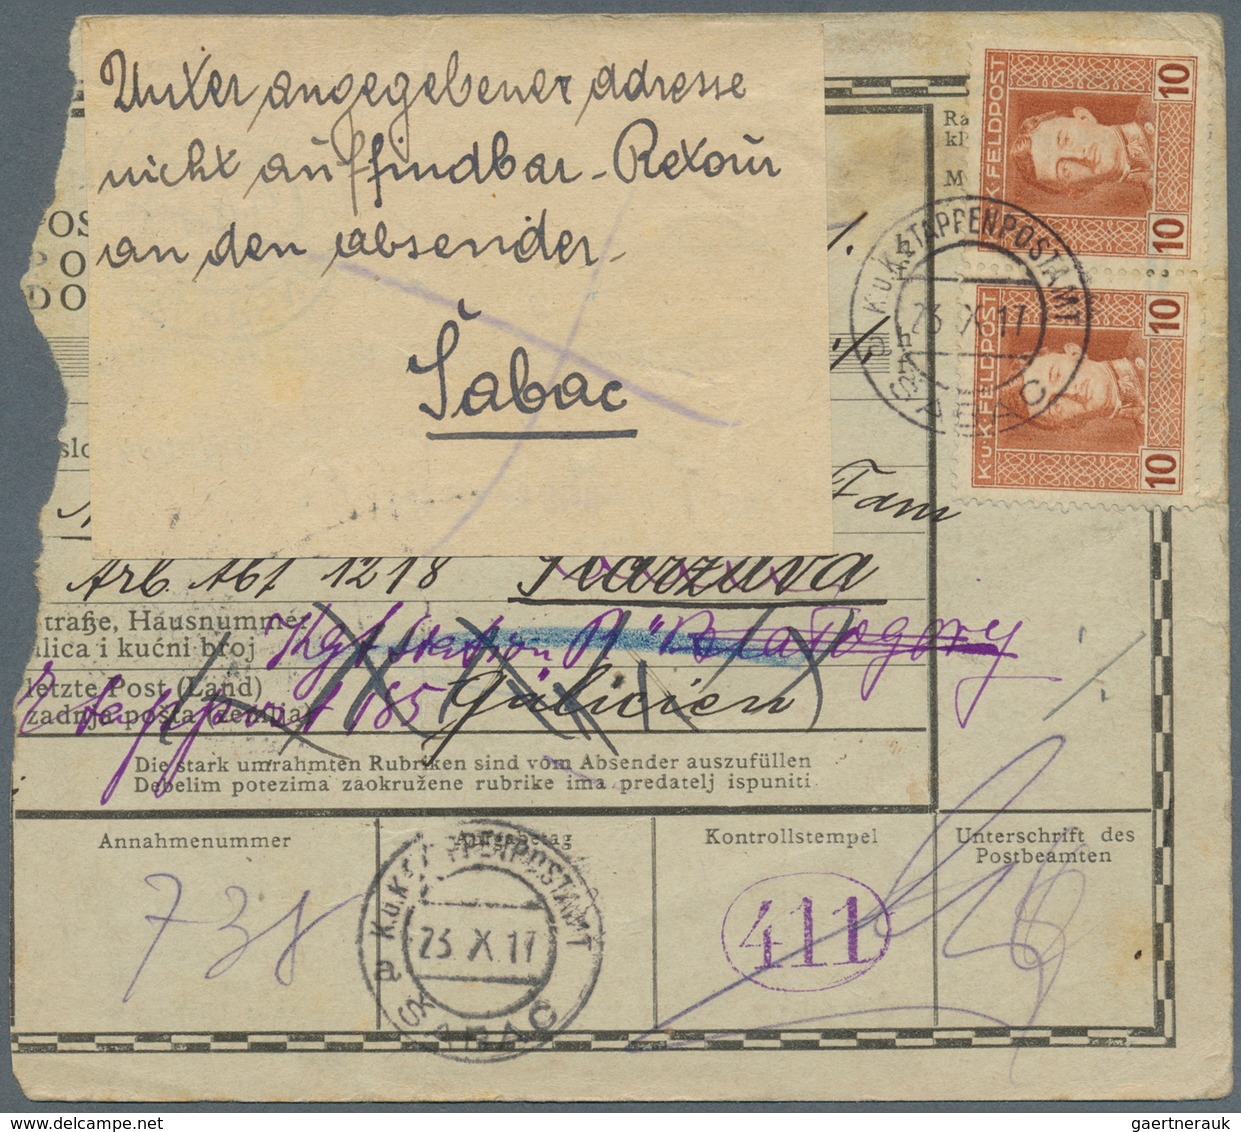 27651 Österreich - Militärpost / Feldpost: 1914/1918, KRIEGSGEFANGENEN-POST: Lot von ca. 40 Belegen aus de